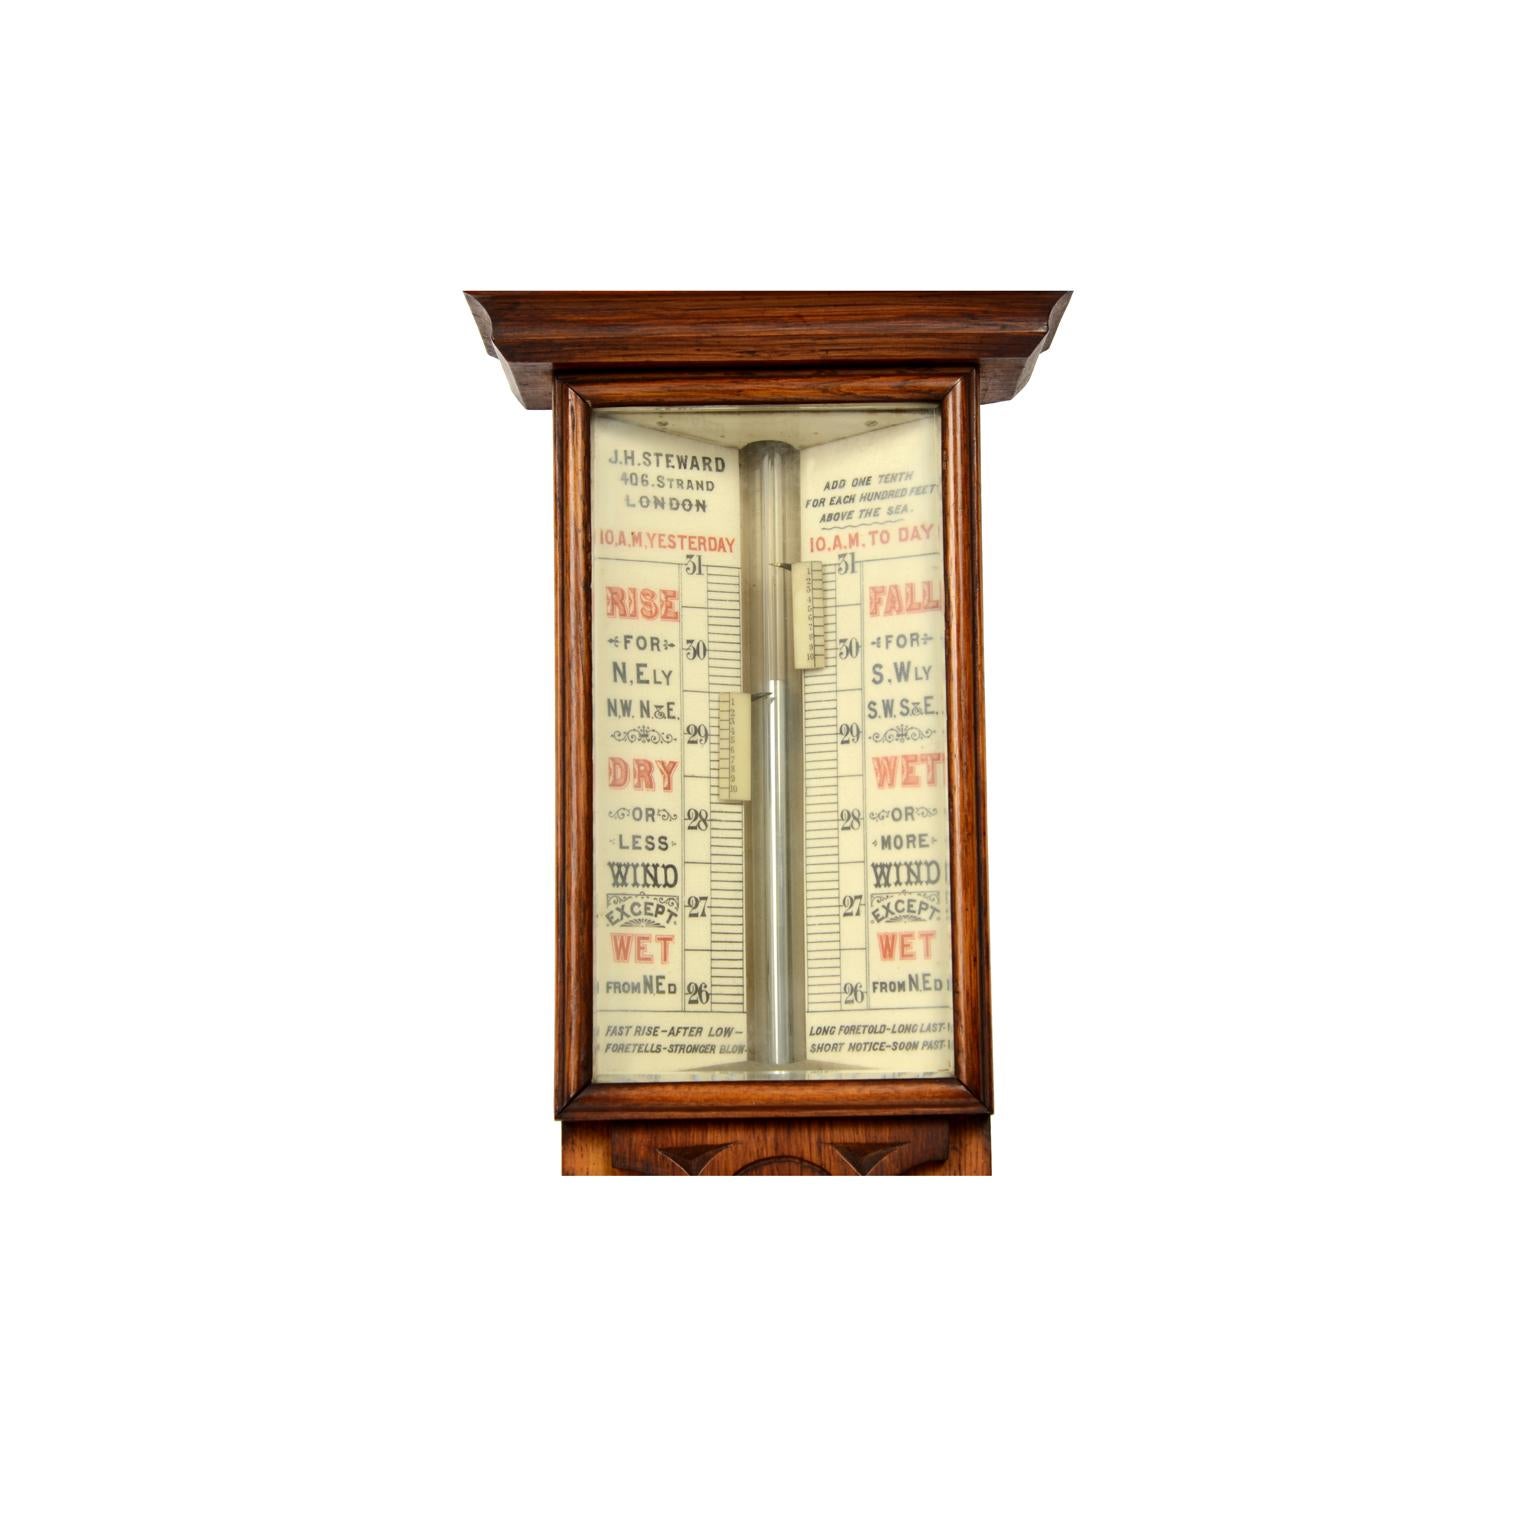 Baromètre et thermomètre de la fin du 19e siècle de J. H. Stewar, modèle météorologique ancien en vente 10